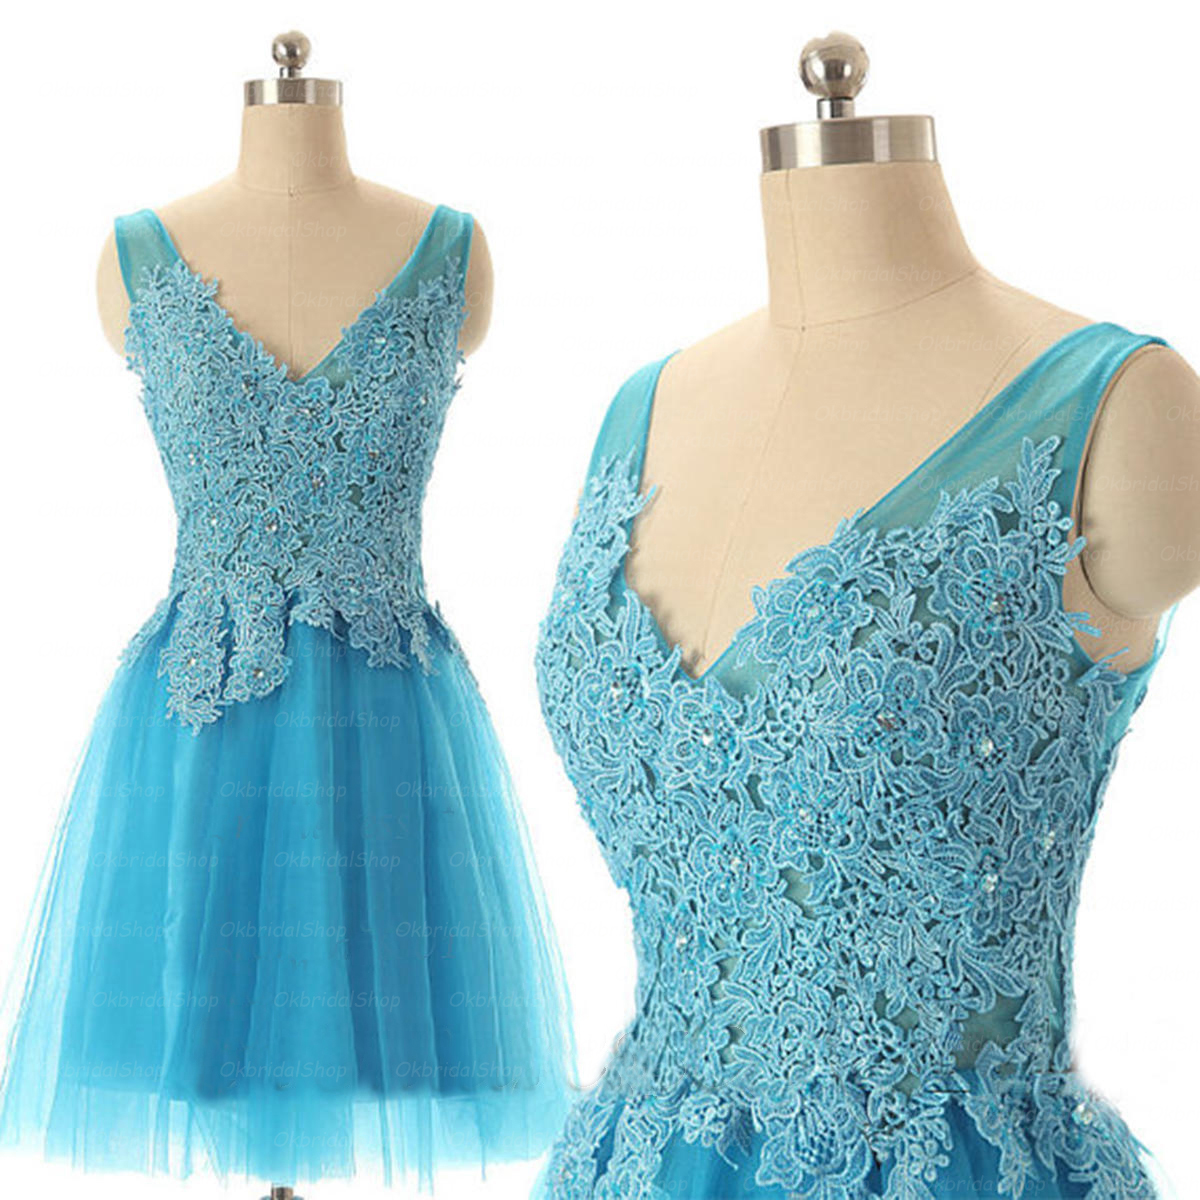 Short Blue Graduation Dress, 2015 Short Prom Dress, Sexy V Neck Party Dress, Lace Prom Dress, Party Dress, Formal Gowns Dress. Junior High